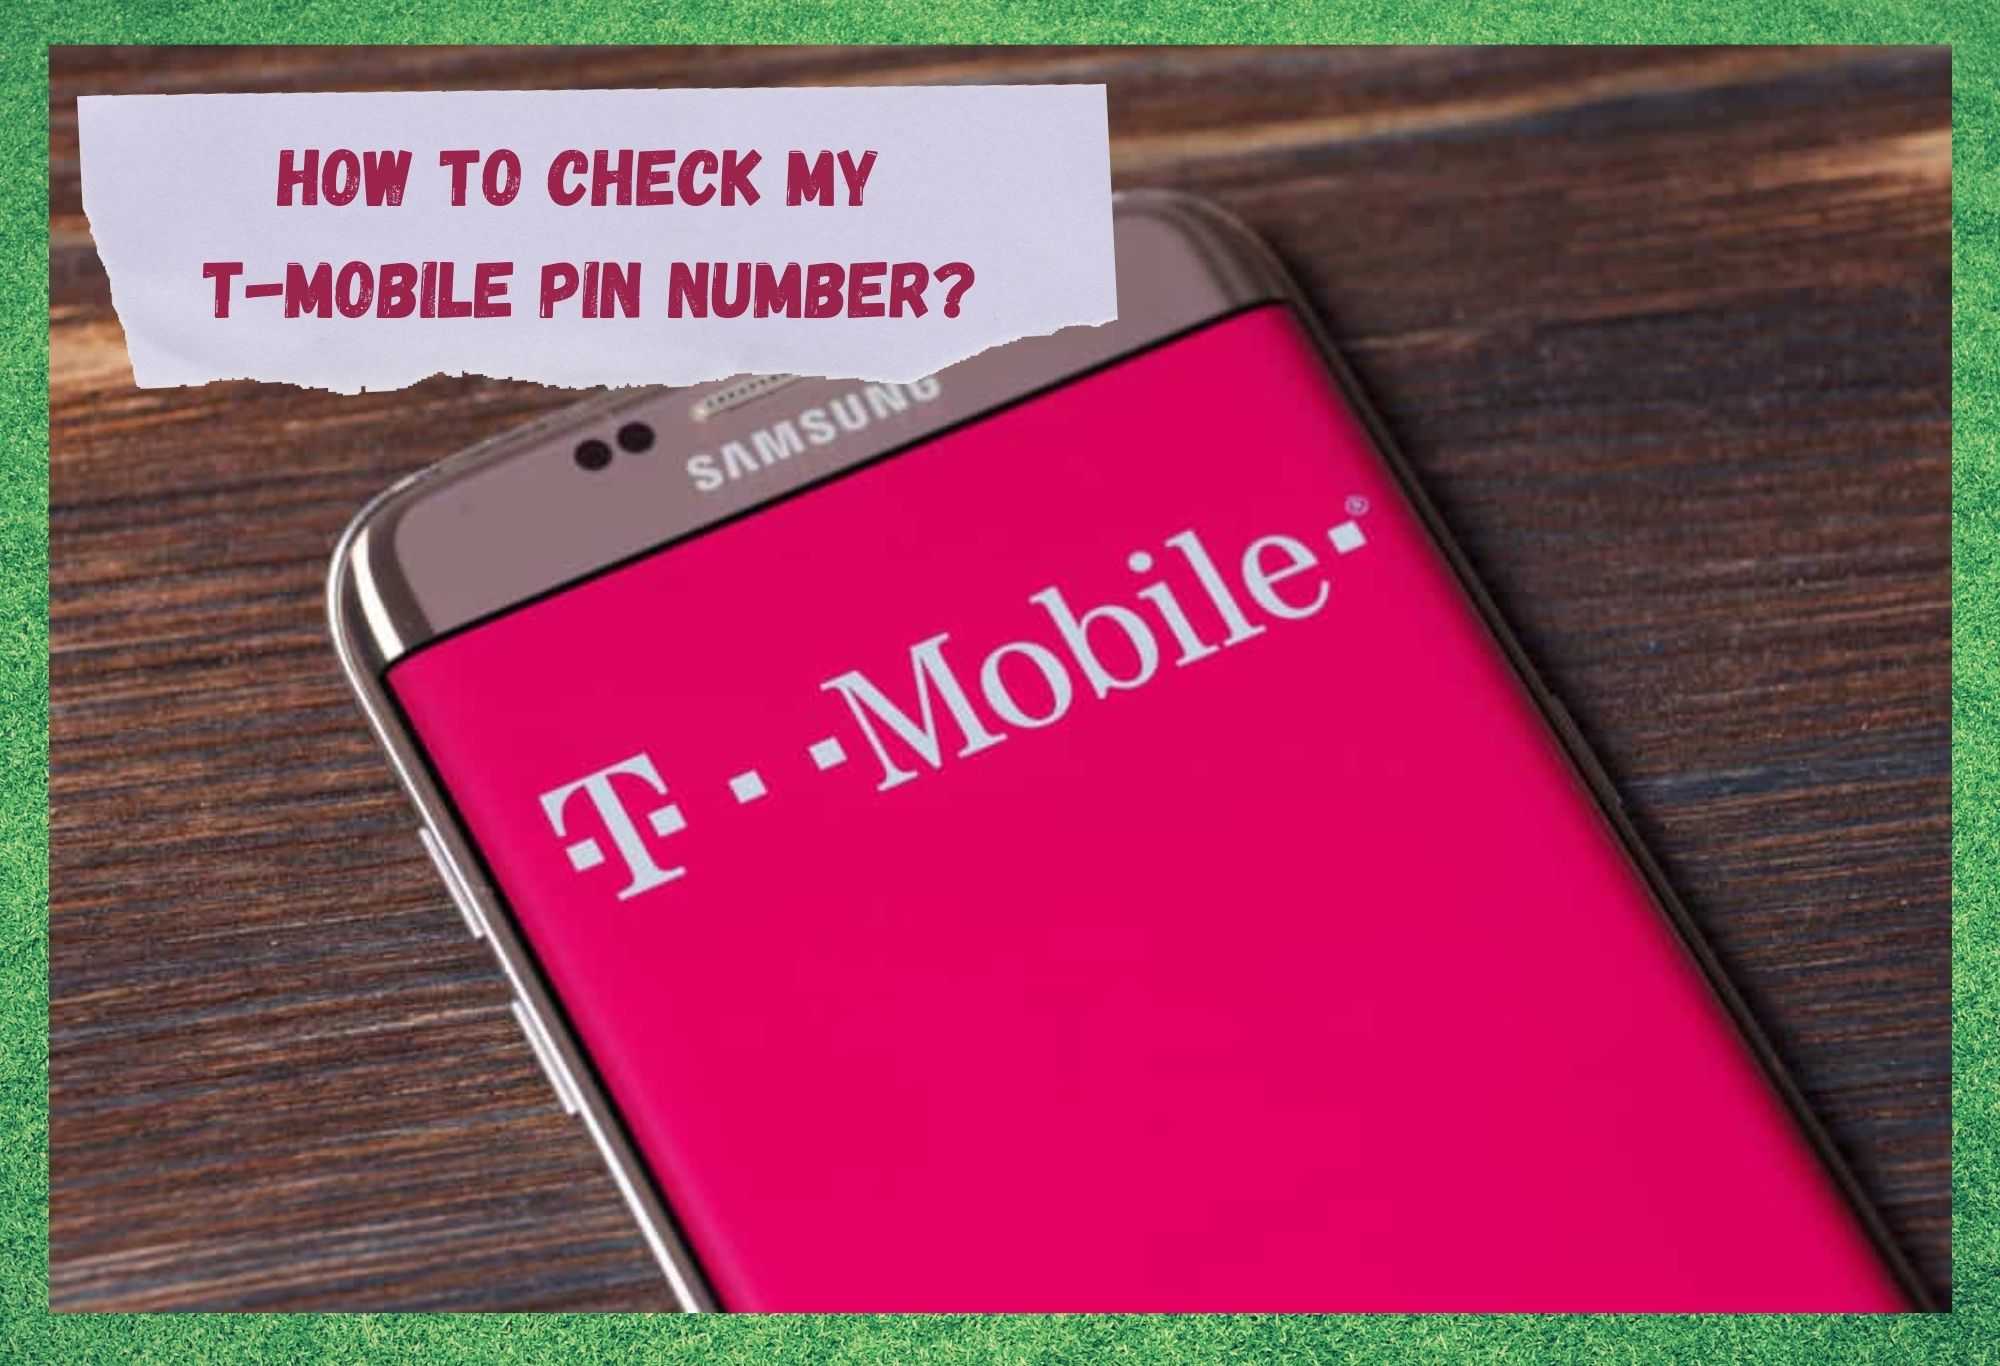 මගේ T-Mobile PIN අංකය පරීක්ෂා කරන්නේ කෙසේද? පැහැදිලි කළා